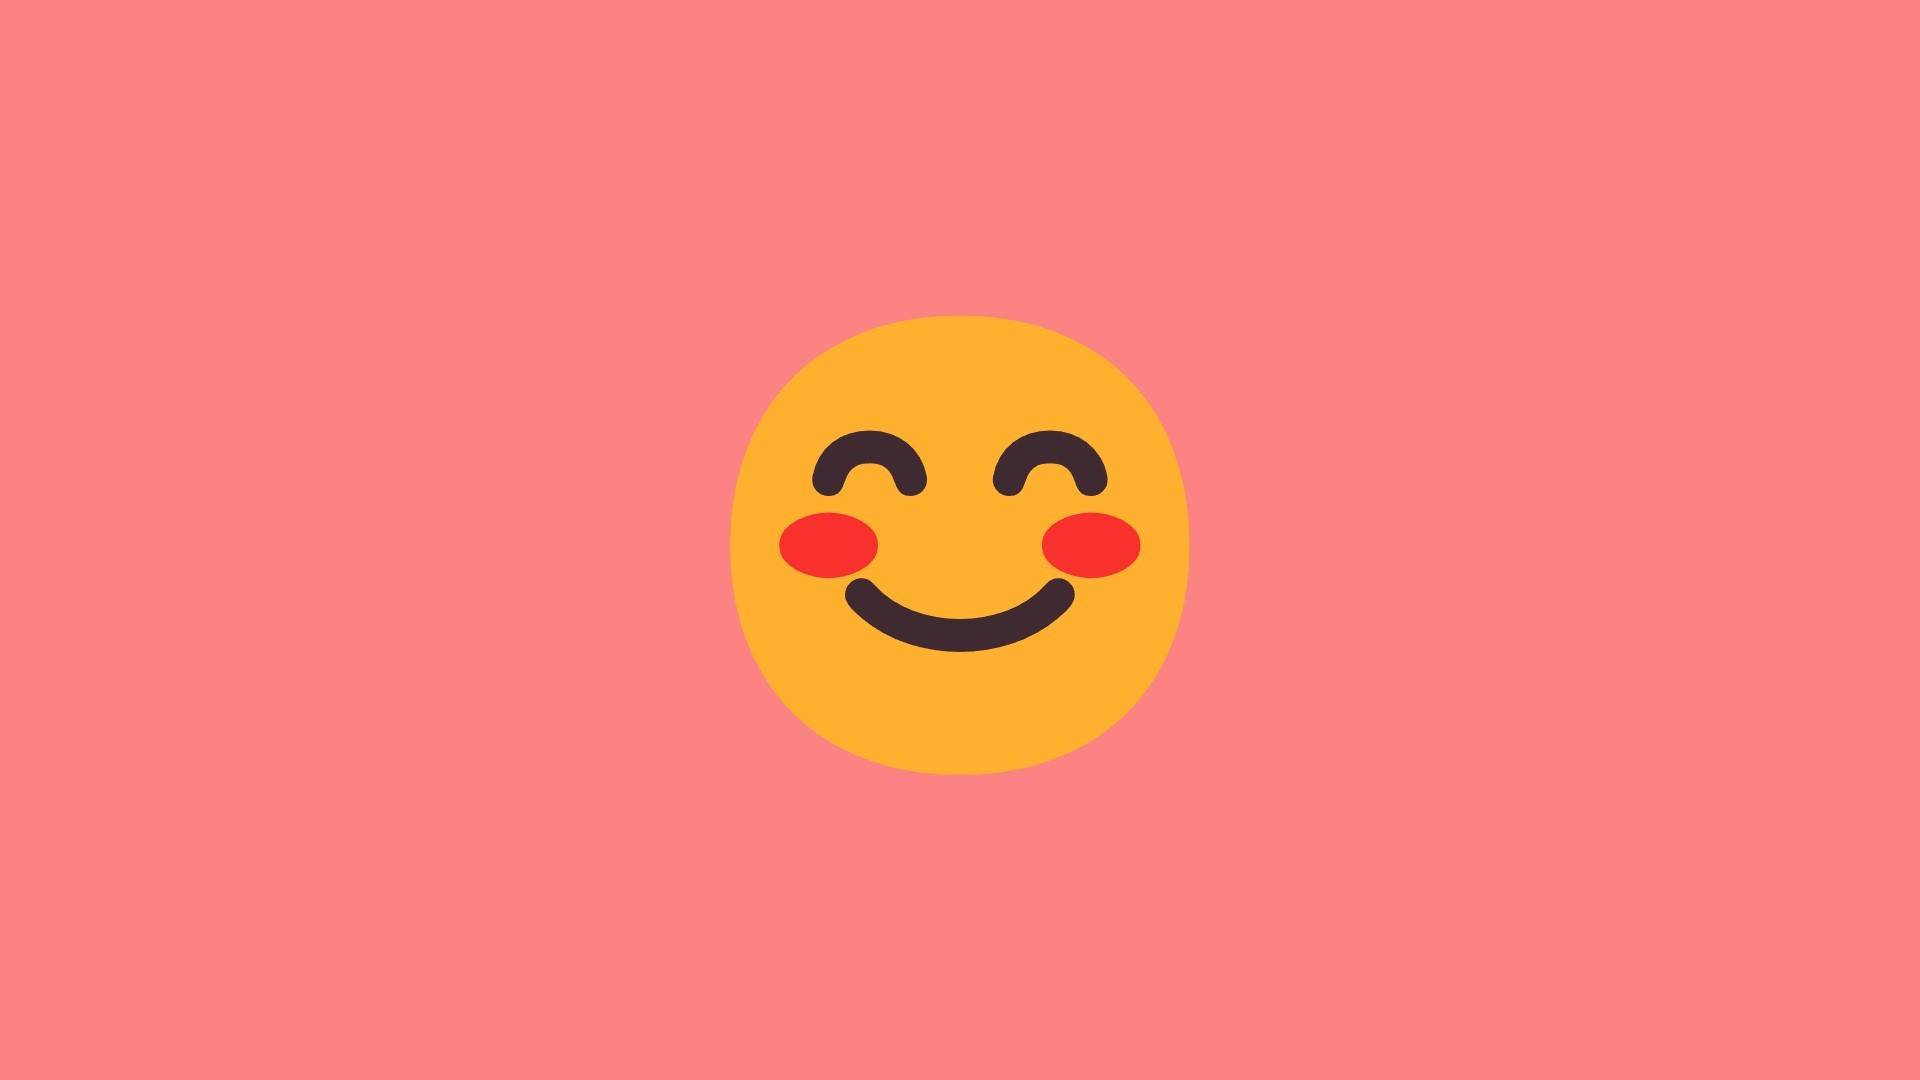 Emoji 10 smiling face with smiling eyes